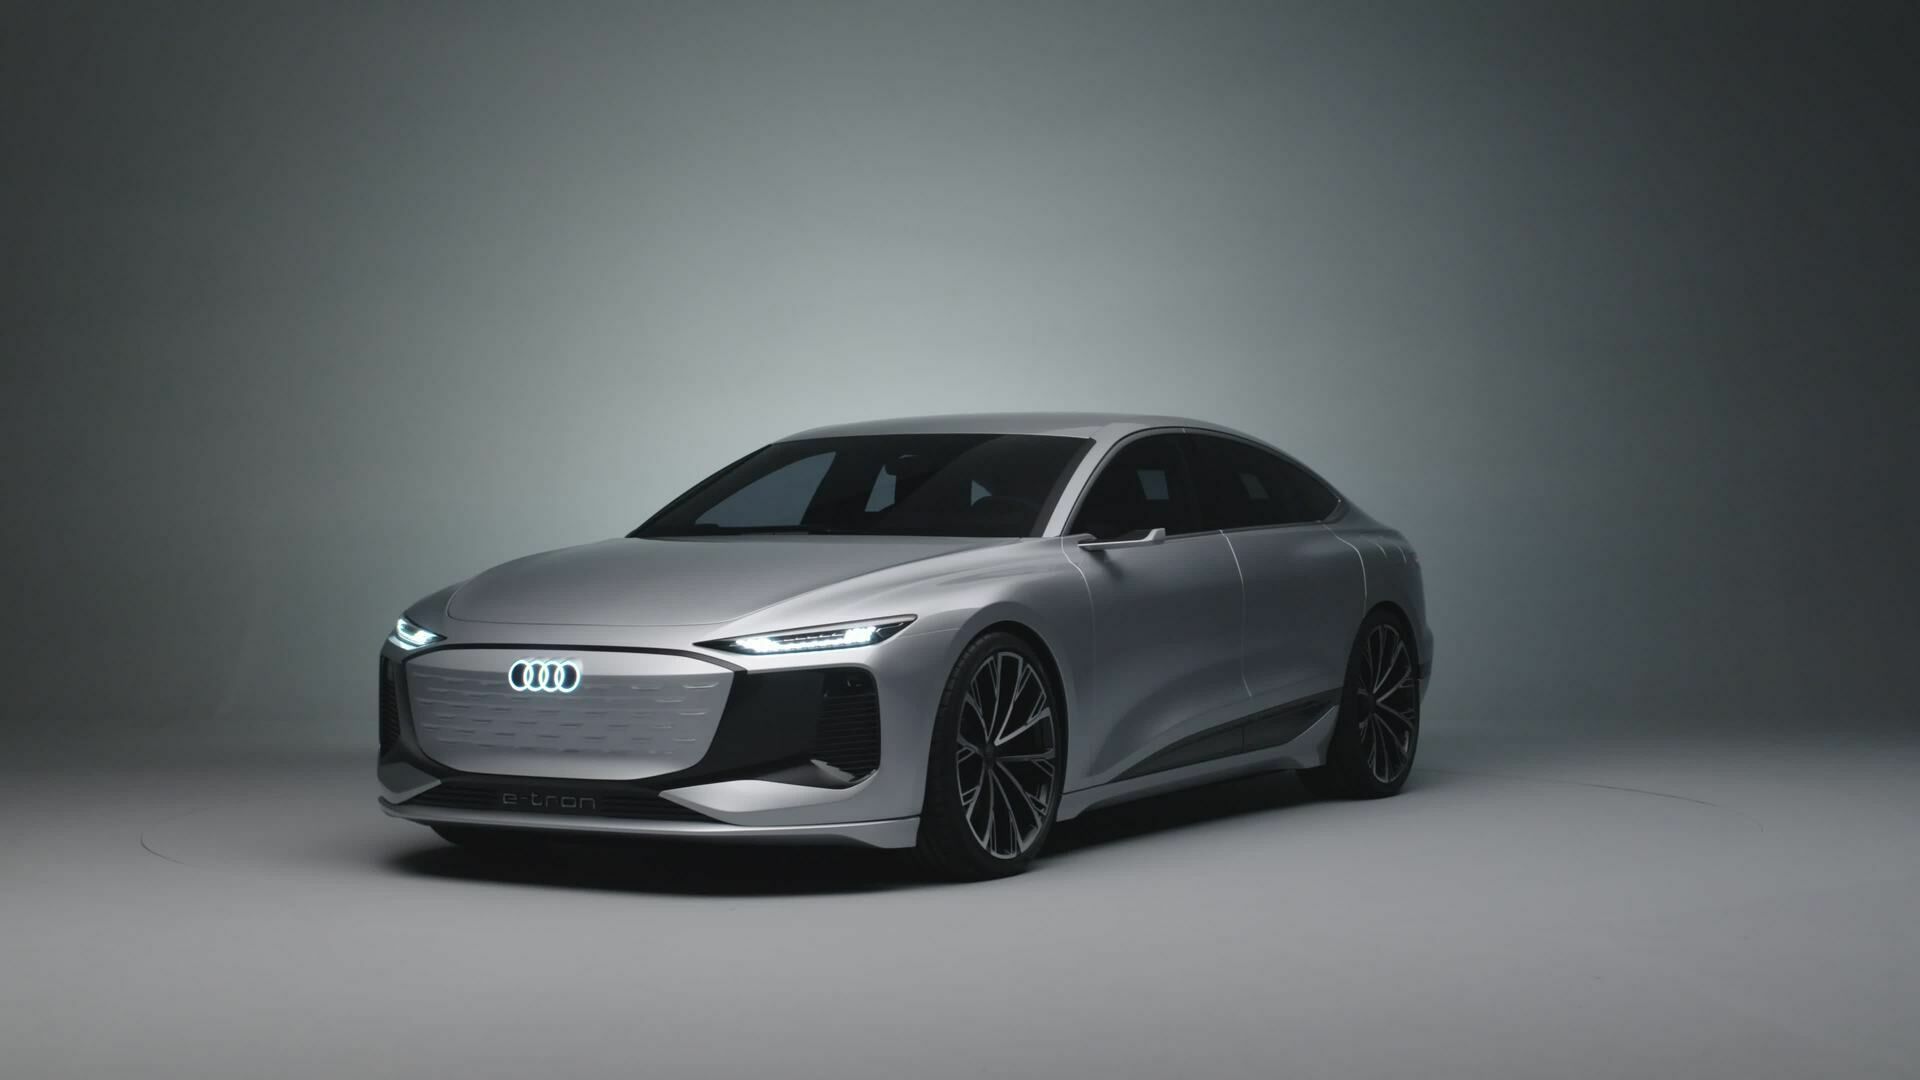 The design of the new Audi A6 e-tron concept